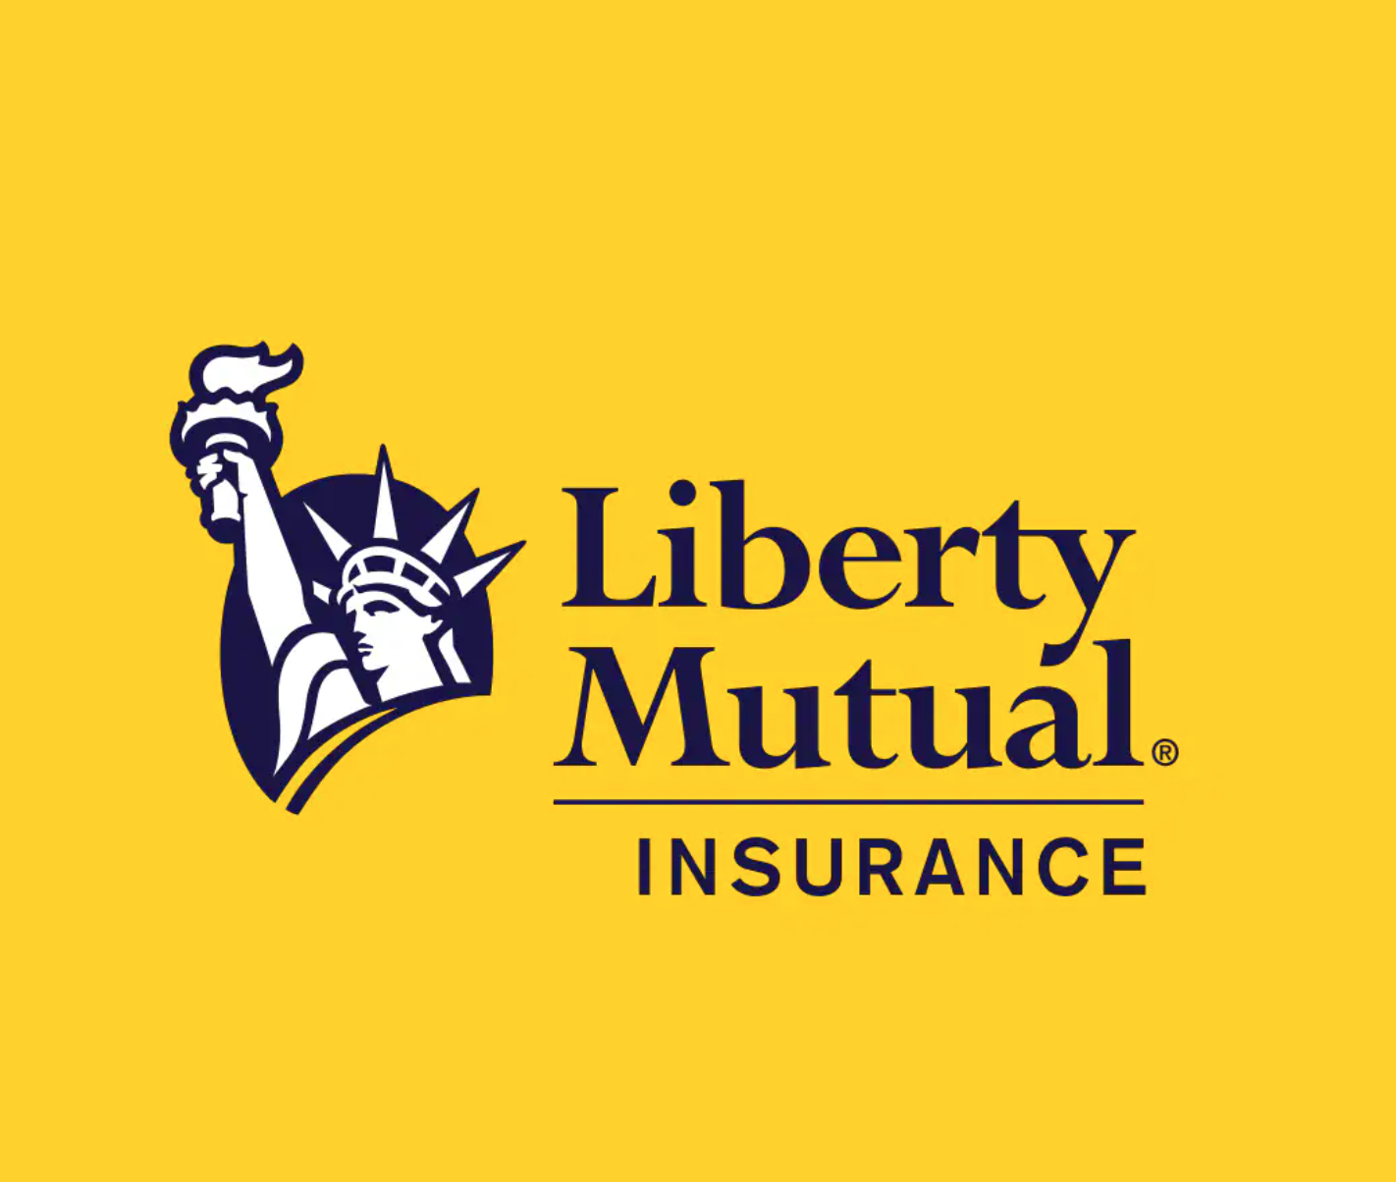 Liberty Mutual Foundation